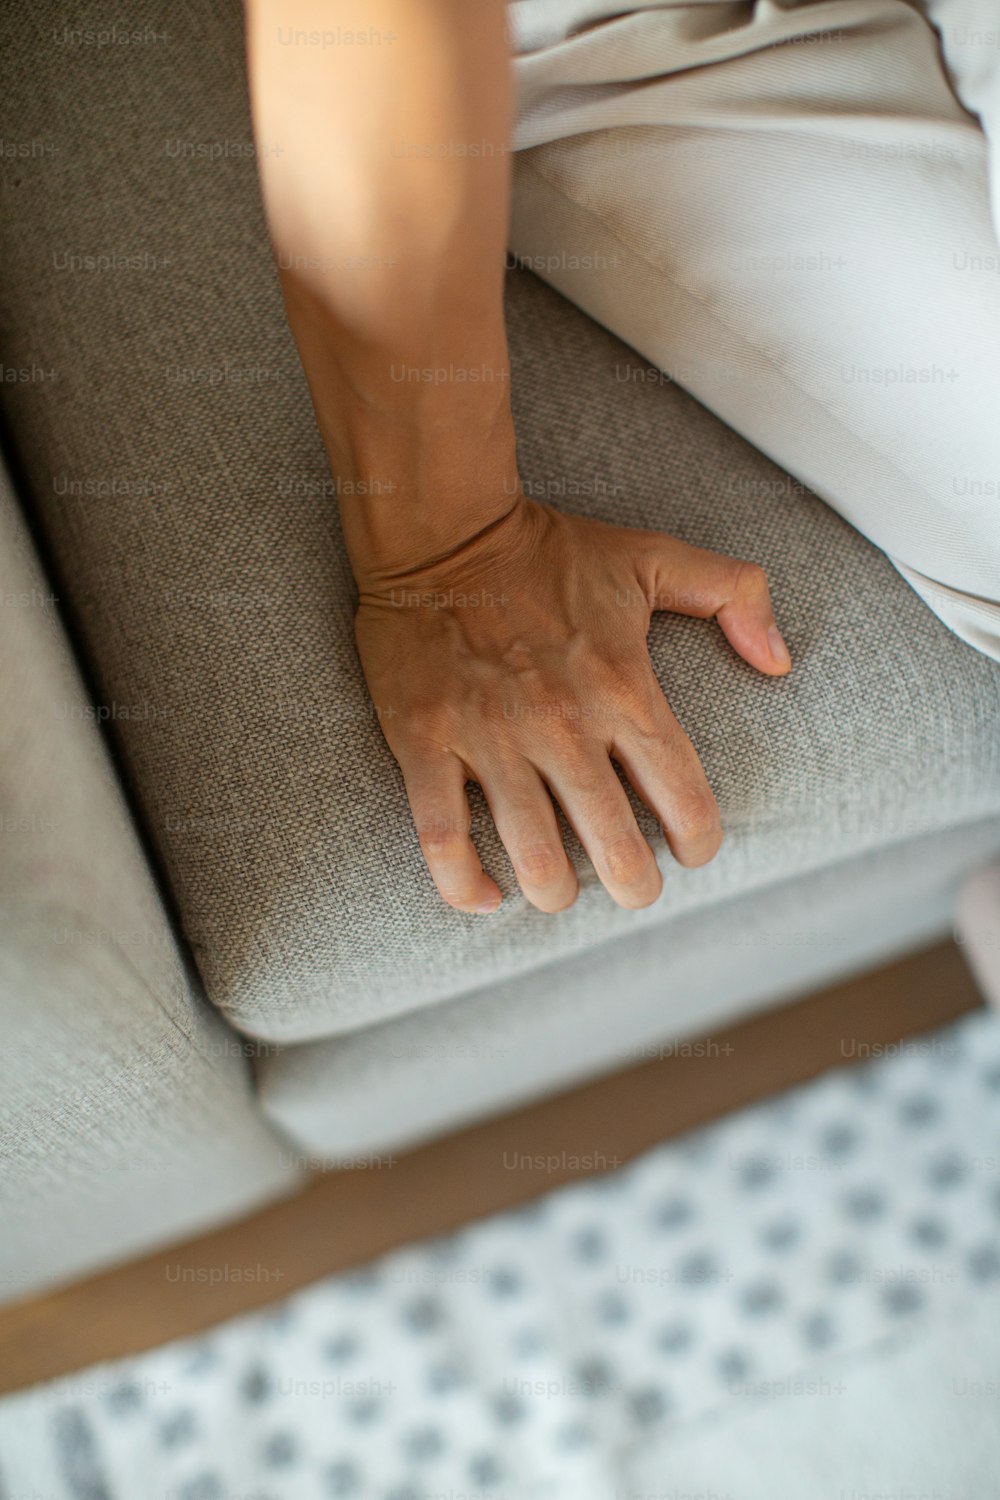 Una persona sentada en un sofá con la mano en el respaldo del sofá